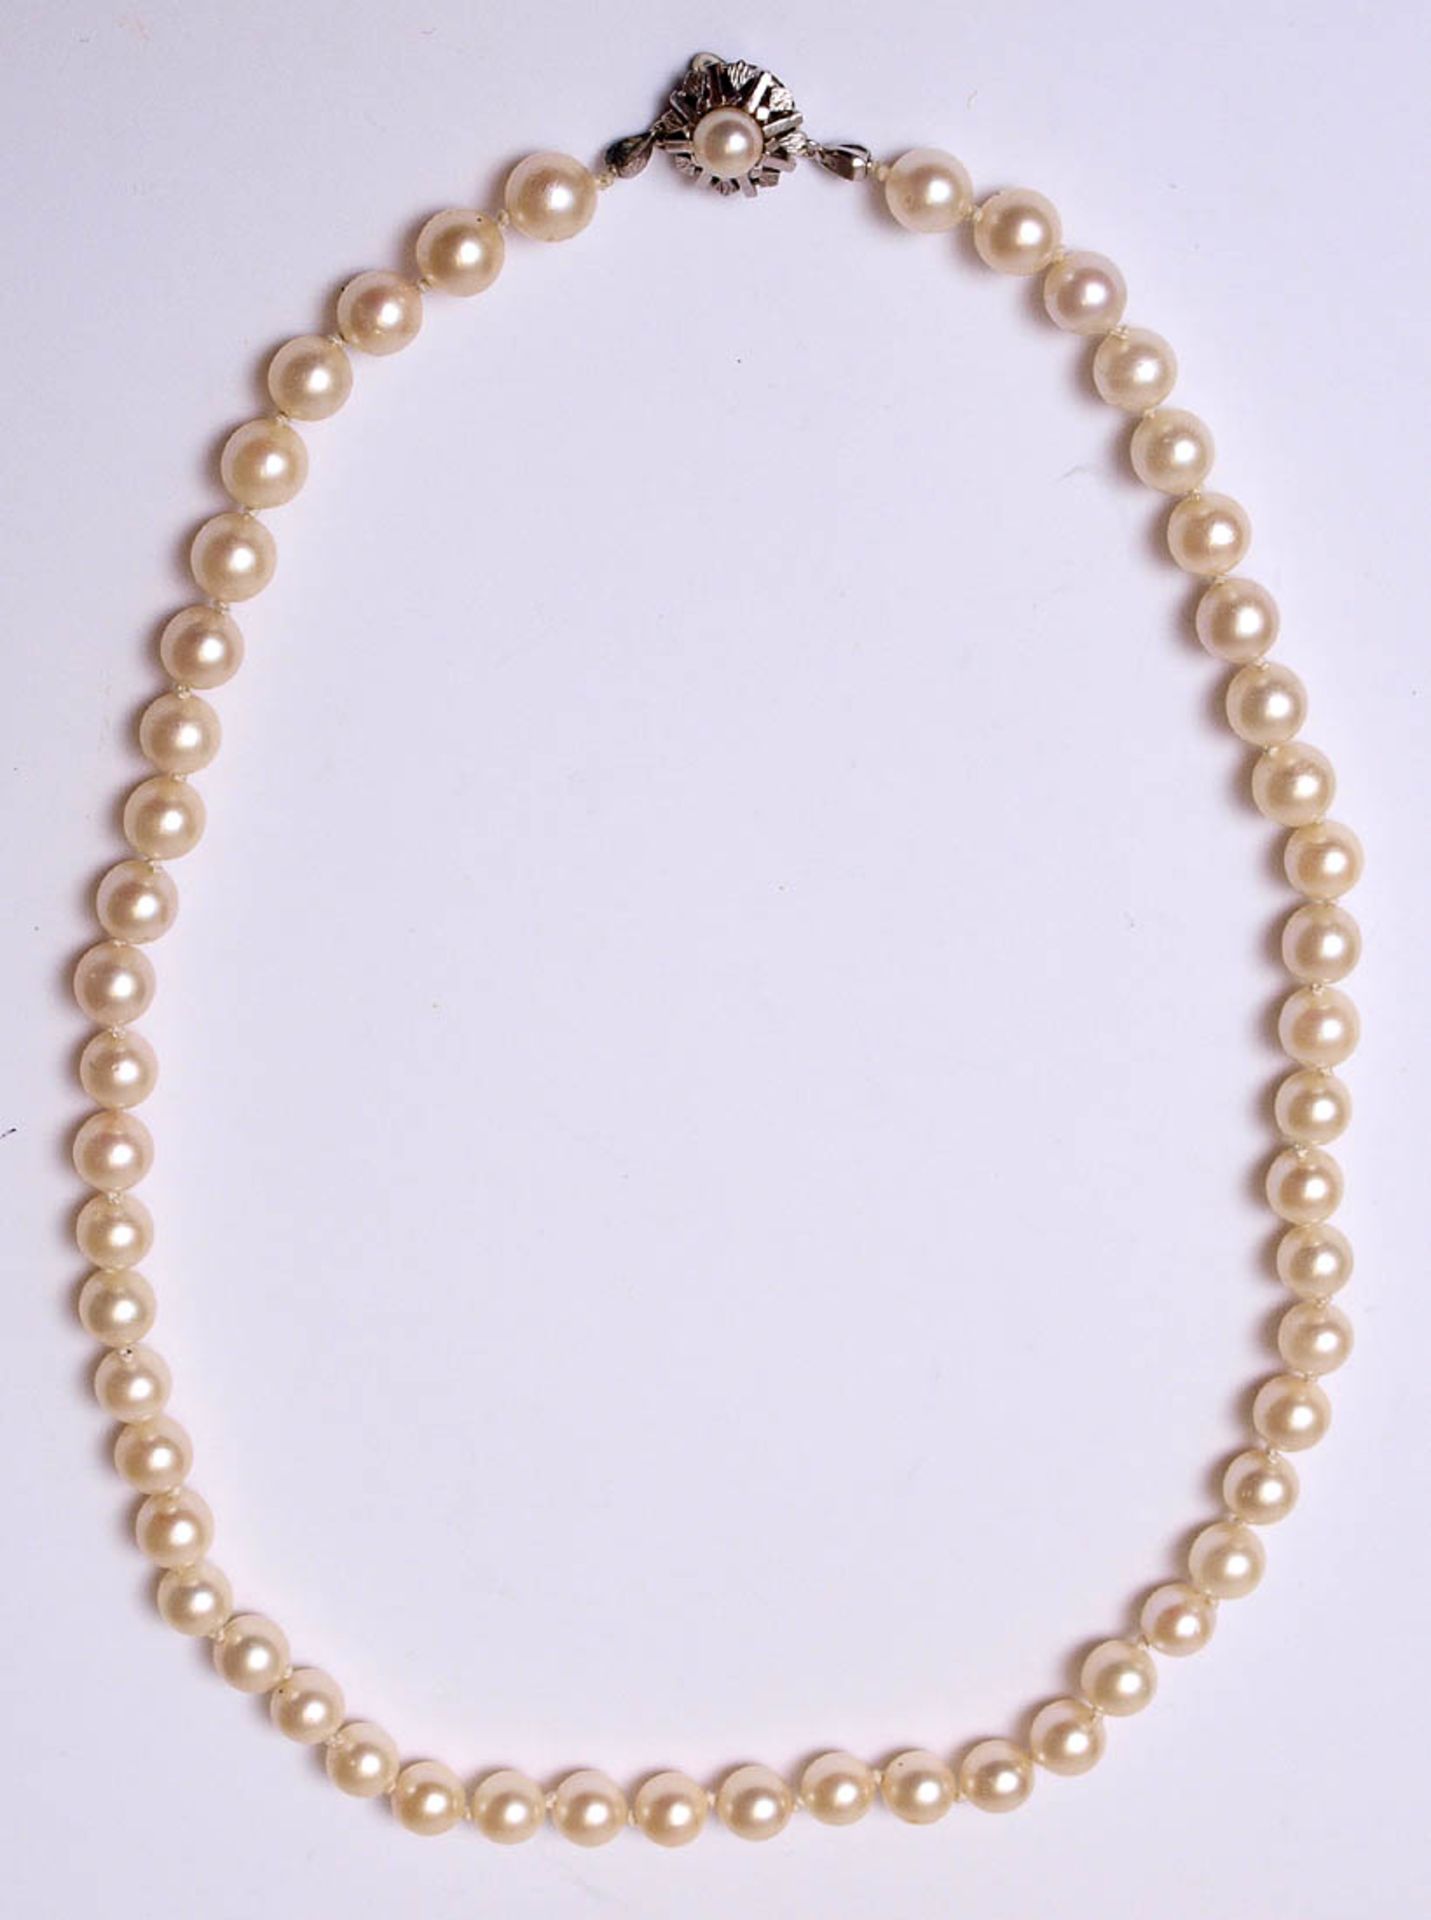 Zuchtperlkette Perlen von feinem Lüster, Durchm. je ca. 0,7cm. Schloss aus WG 14kt. L. ca. 47cm.